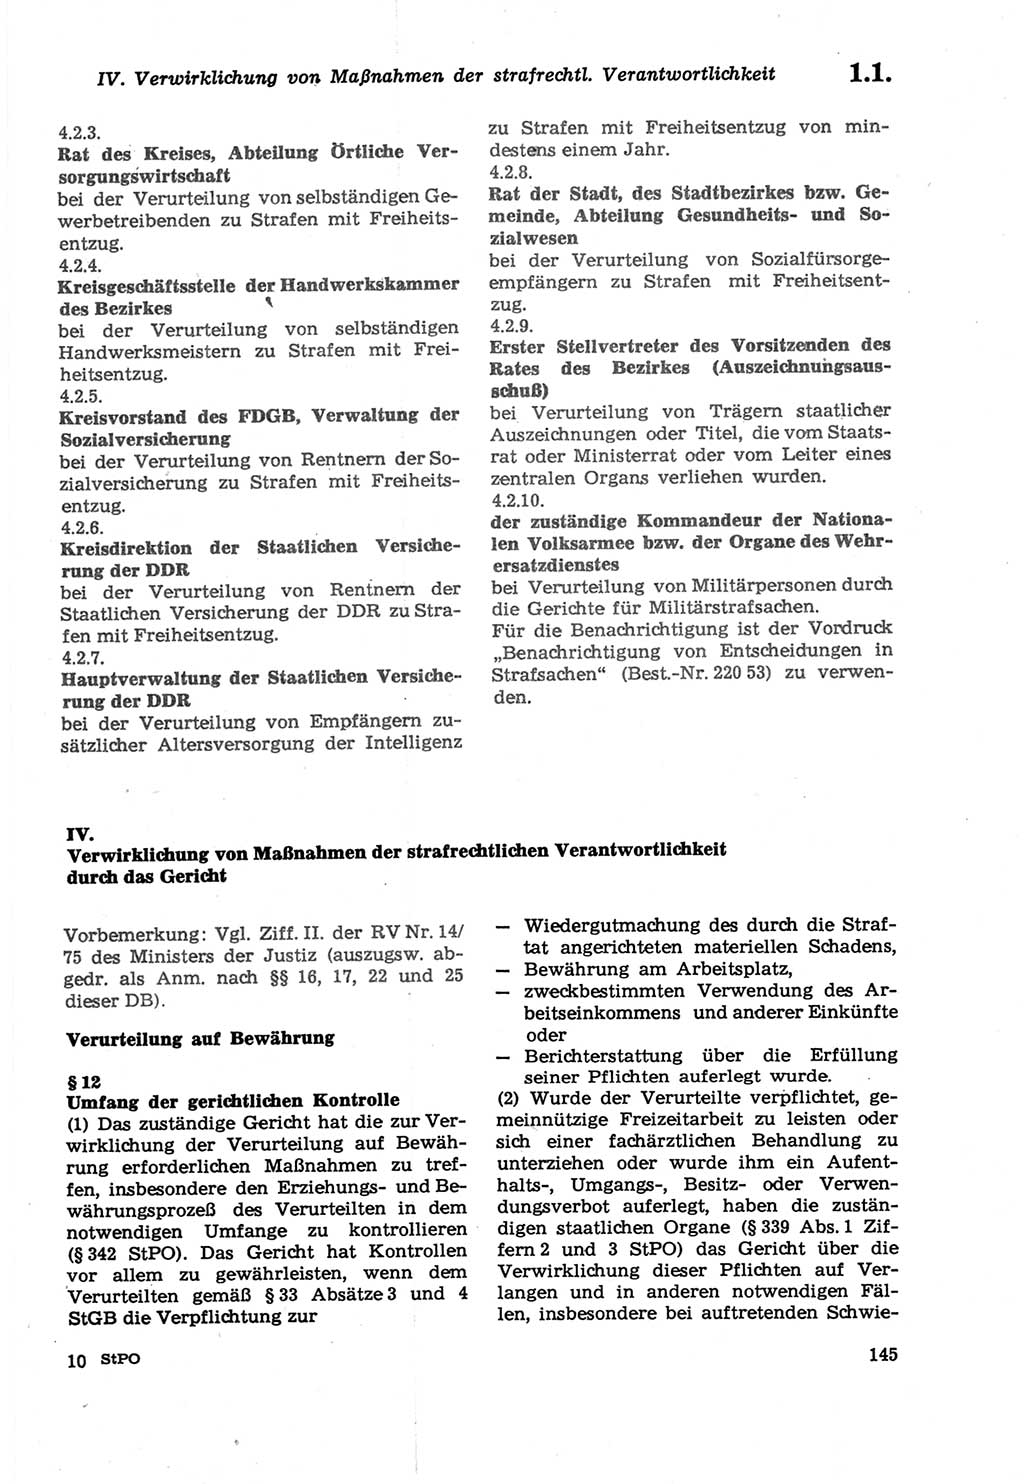 Strafprozeßordnung (StPO) der Deutschen Demokratischen Republik (DDR) sowie angrenzende Gesetze und Bestimmungen 1979, Seite 145 (StPO DDR Ges. Best. 1979, S. 145)